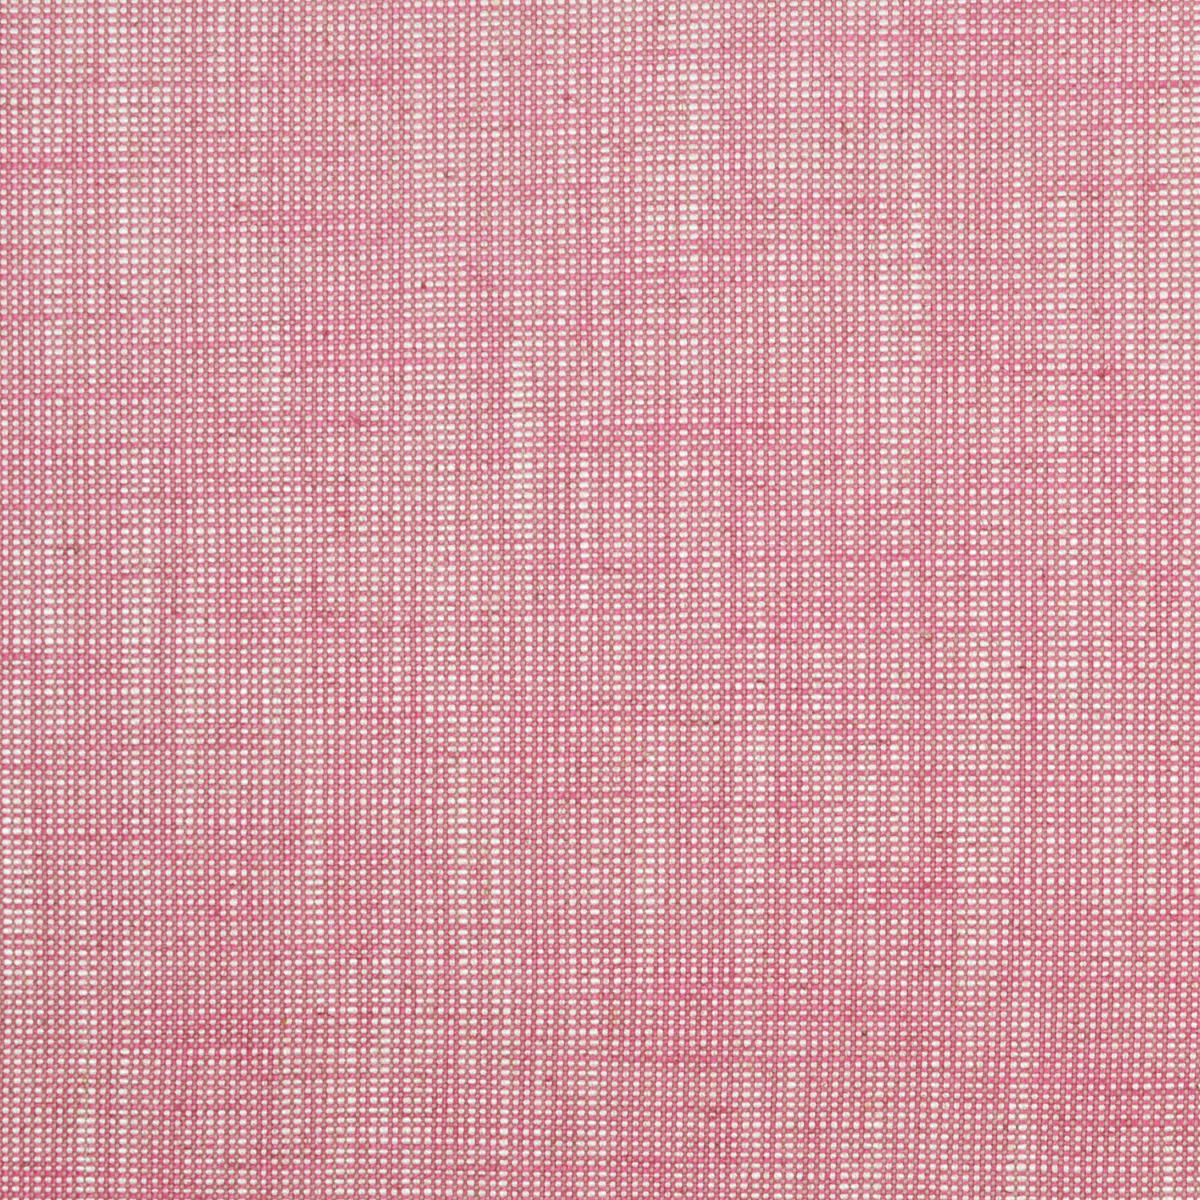 Fillmore - Pink